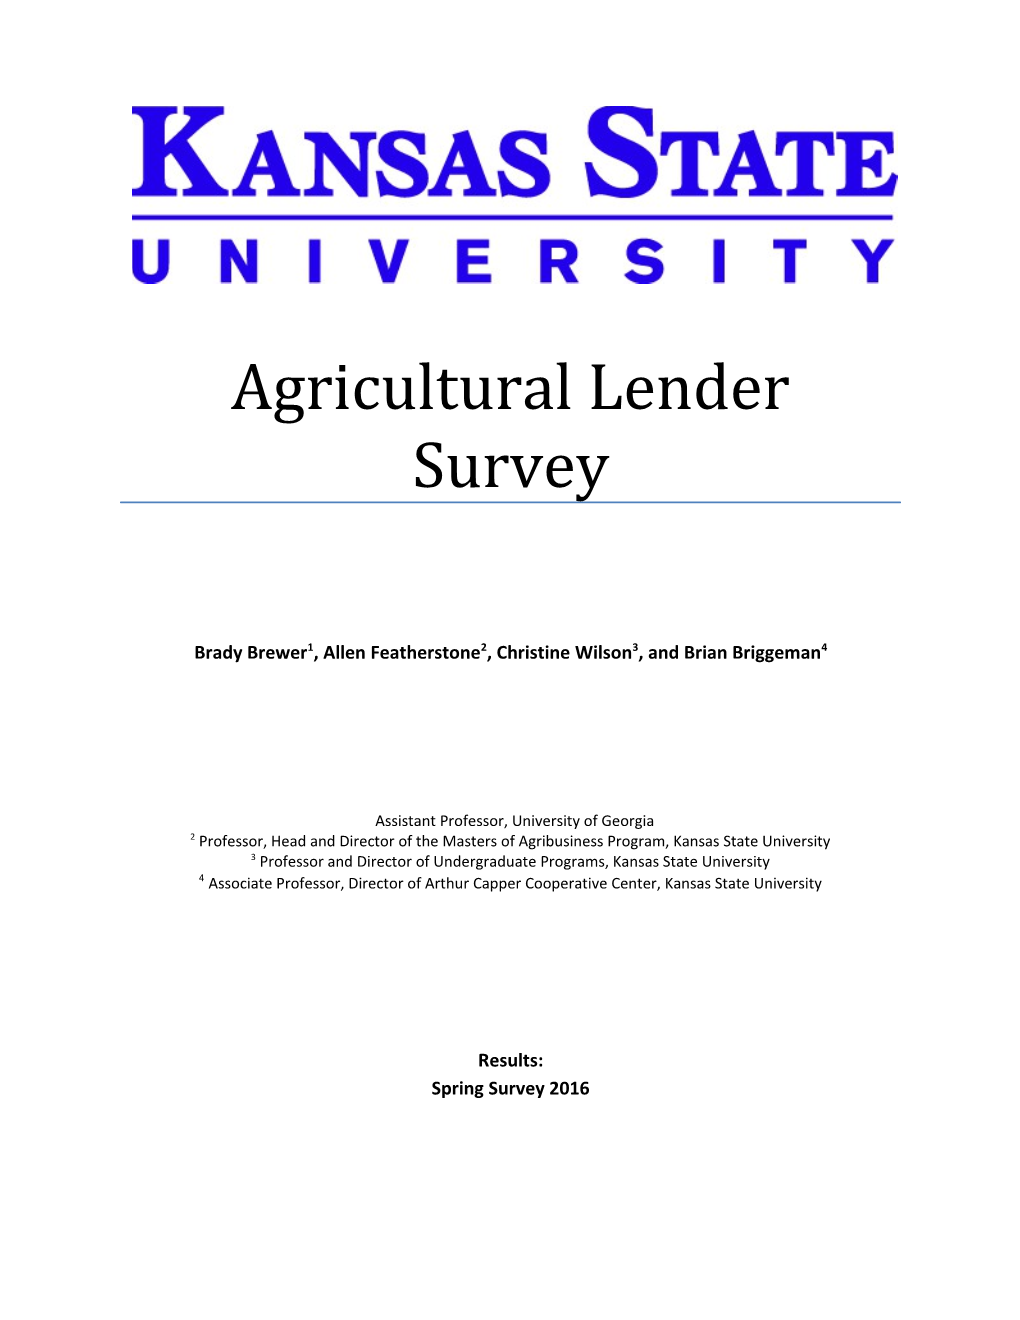 Agricultural Lender Survey